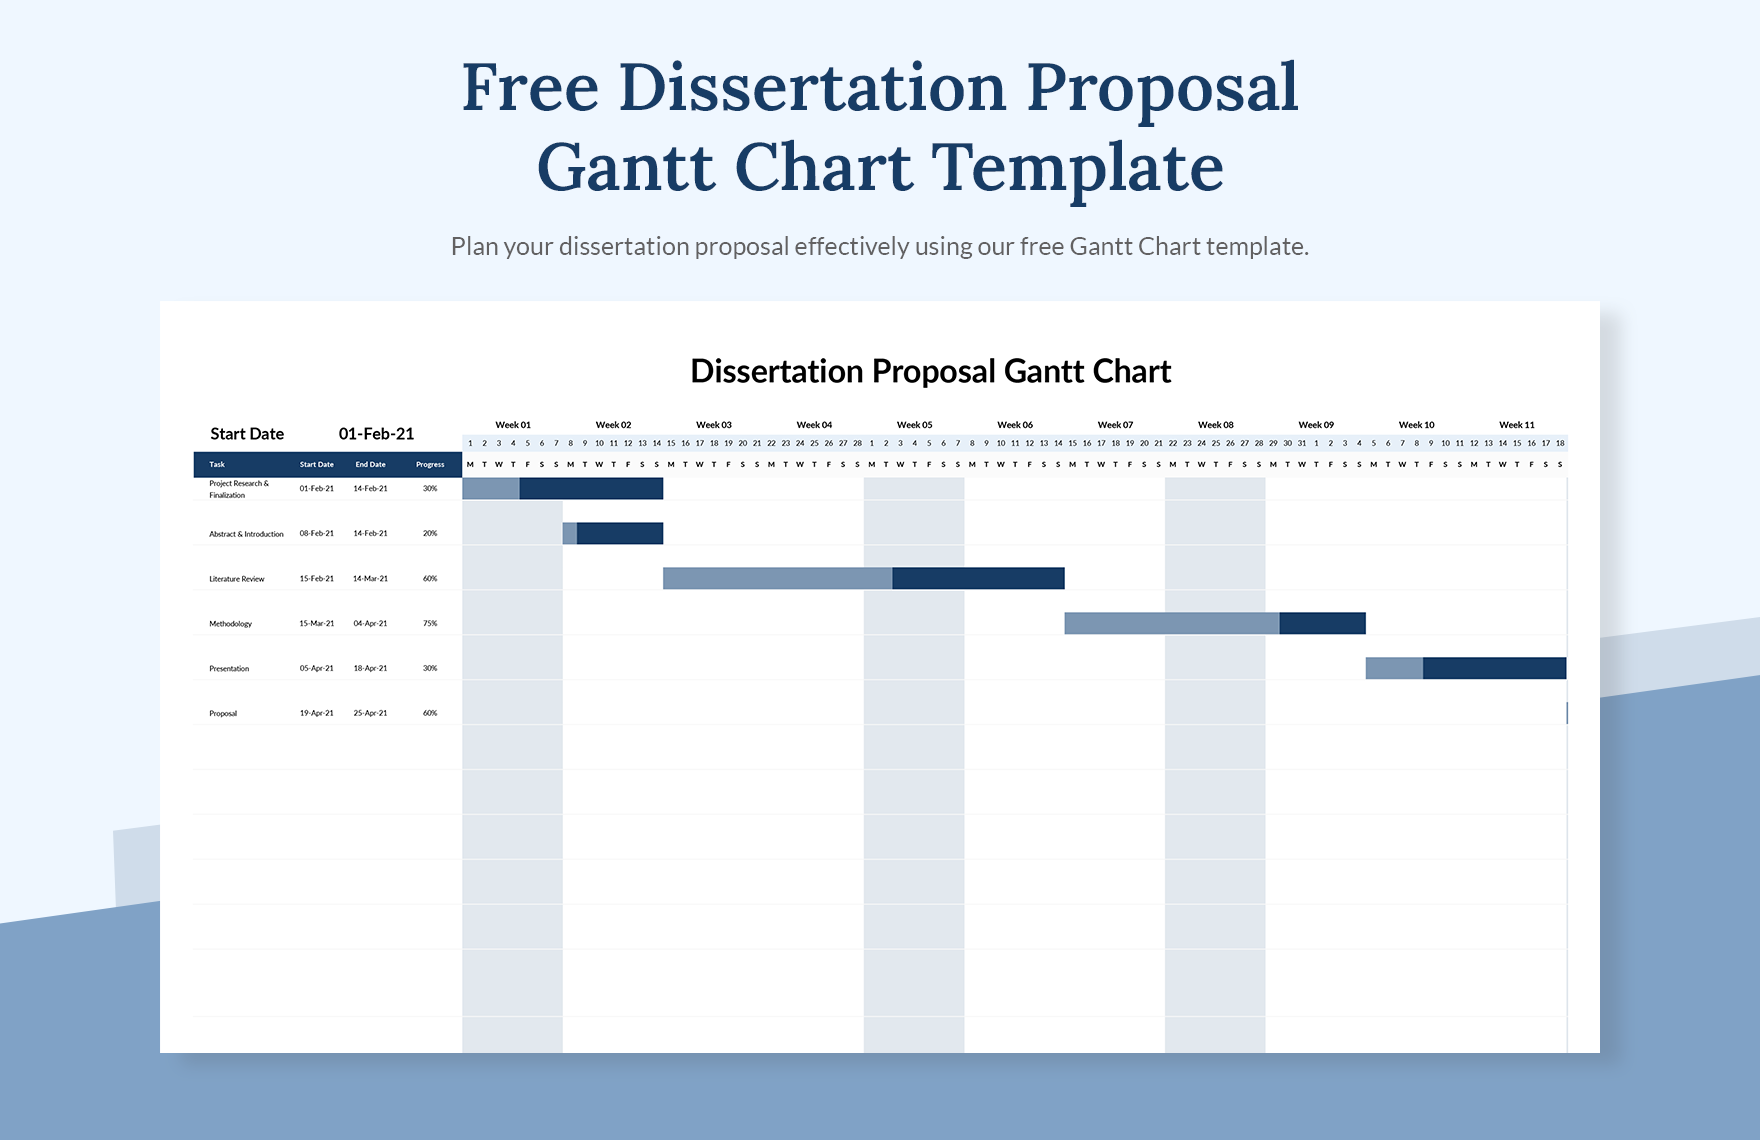 Free Dissertation Proposal Gantt Chart Template